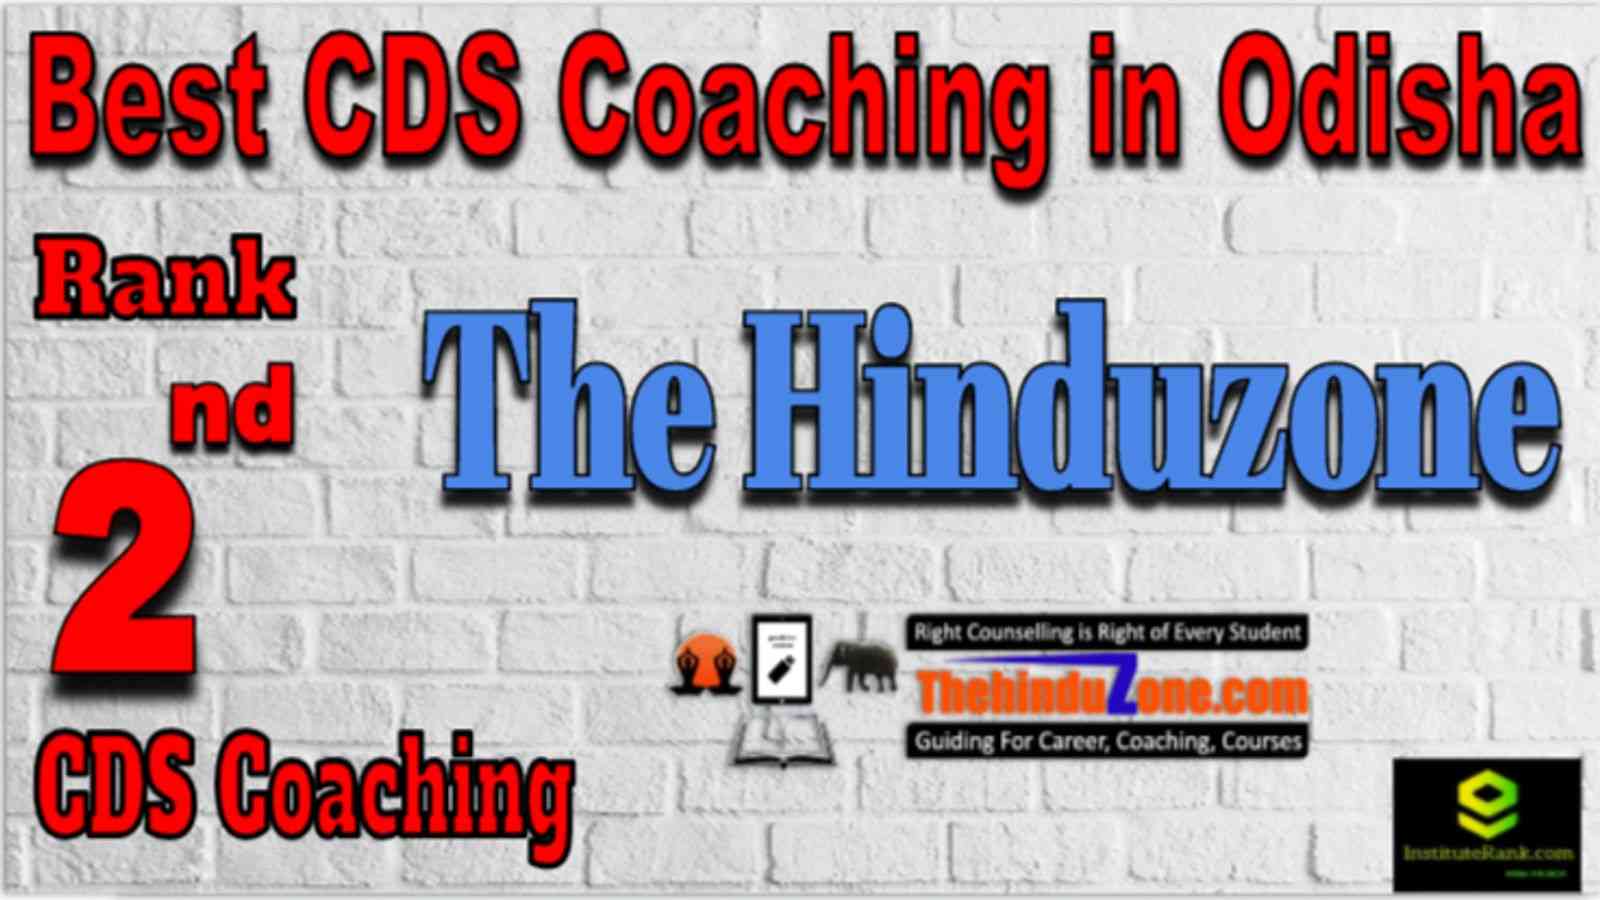 Rank 2 Best CDS Coaching in Odisha